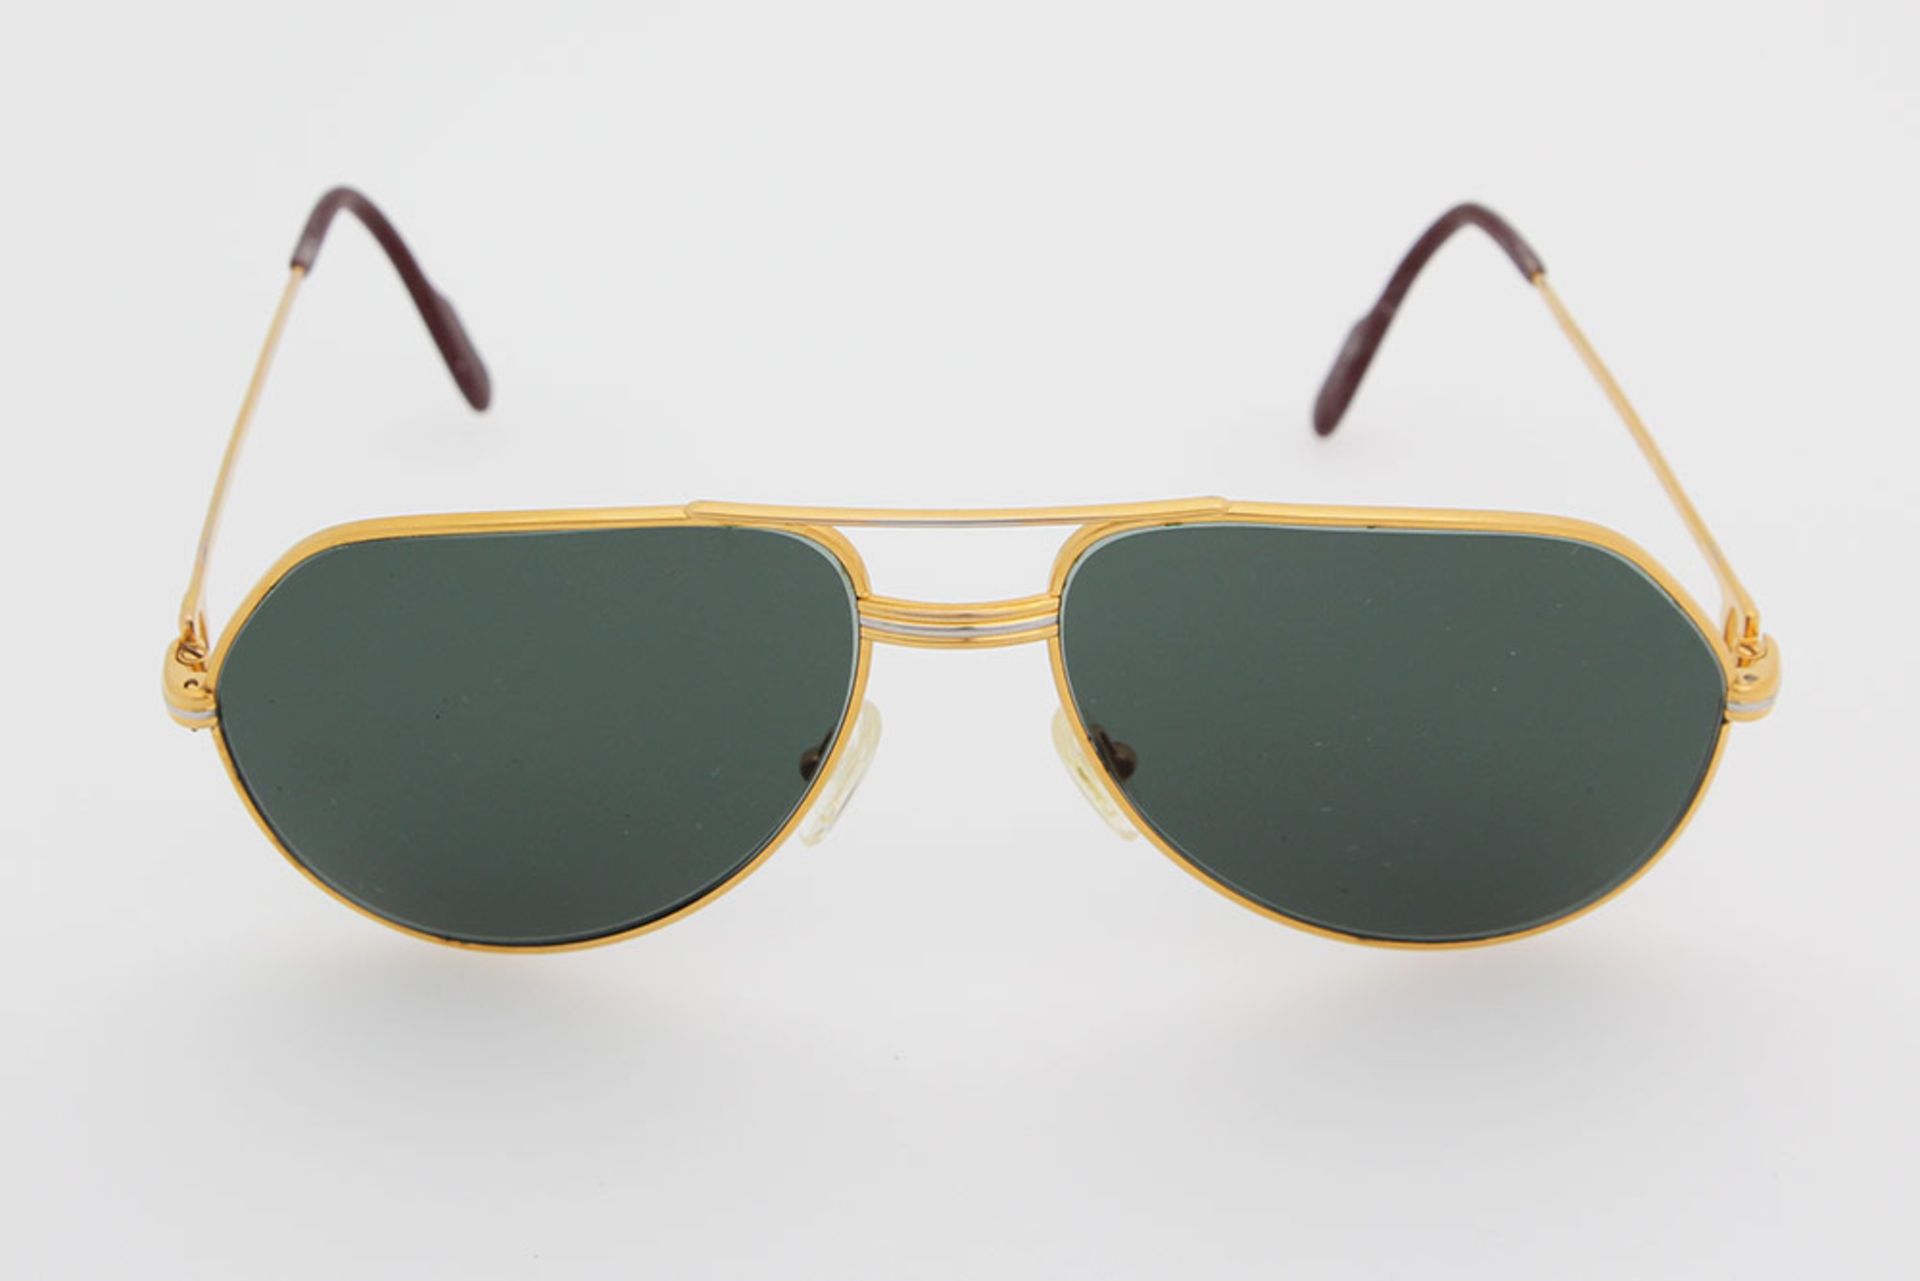 CARTIER VINTAGE edle Sonnenbrille "SANTOS". Zeitlose Pilotenform aus hochwertig, vergoldetem